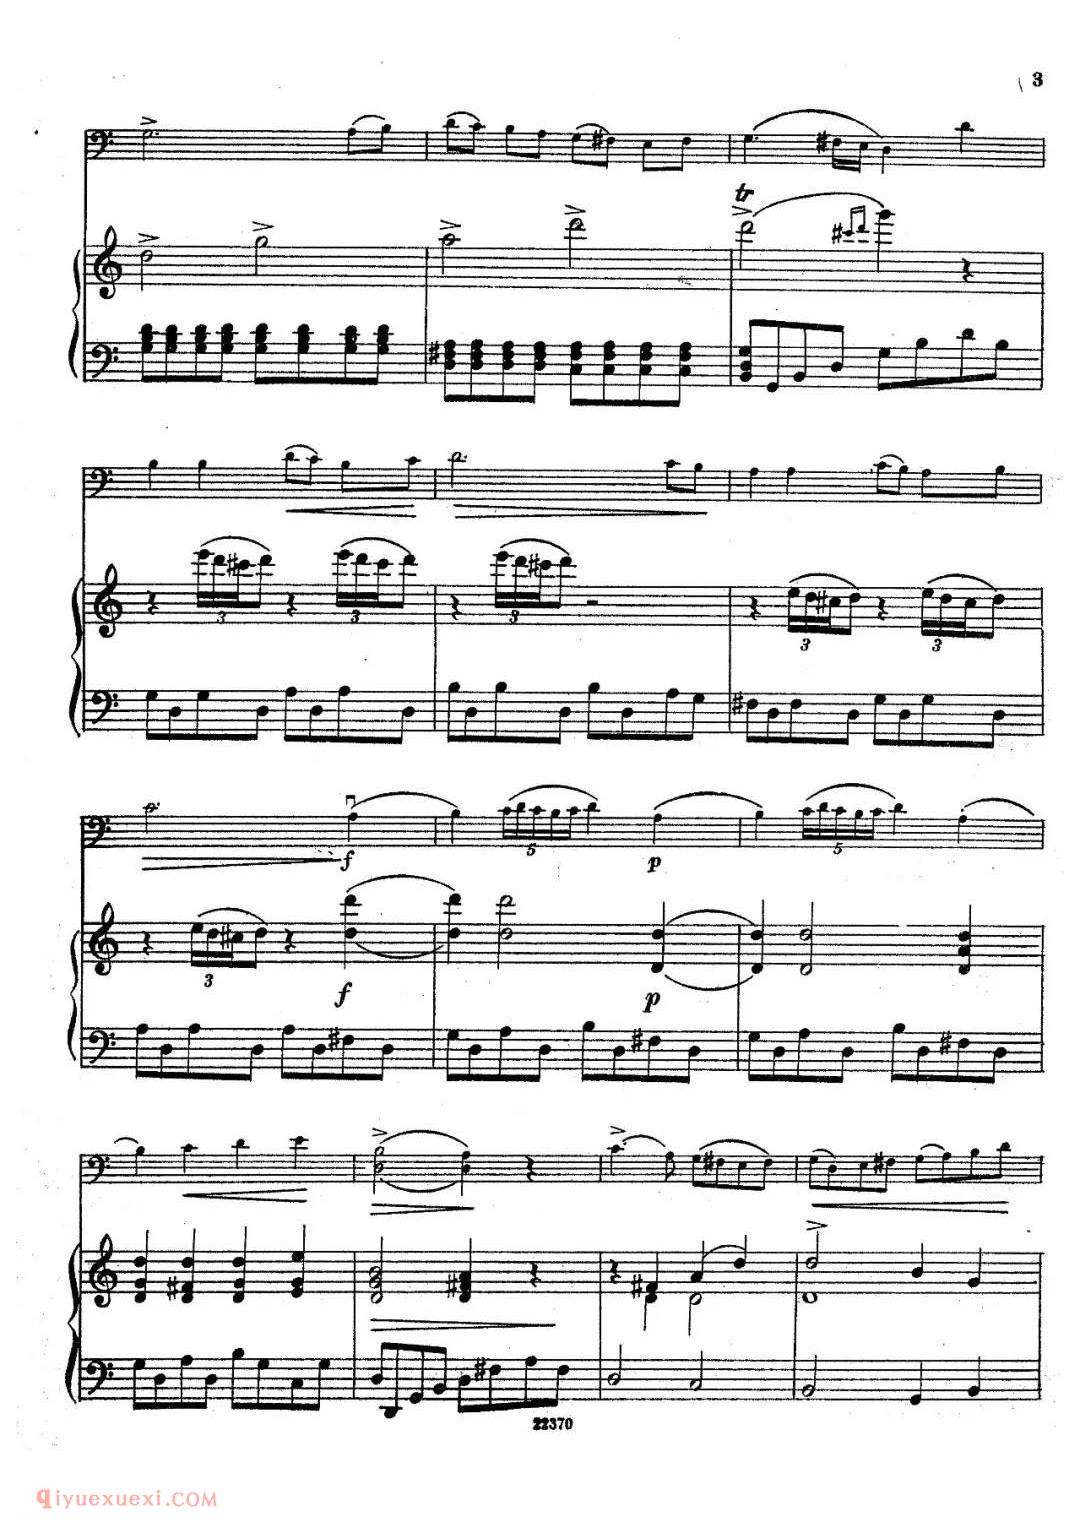 布列瓦尔C大调奏鸣曲 Op.40 No.1大提琴谱 钢琴伴奏谱